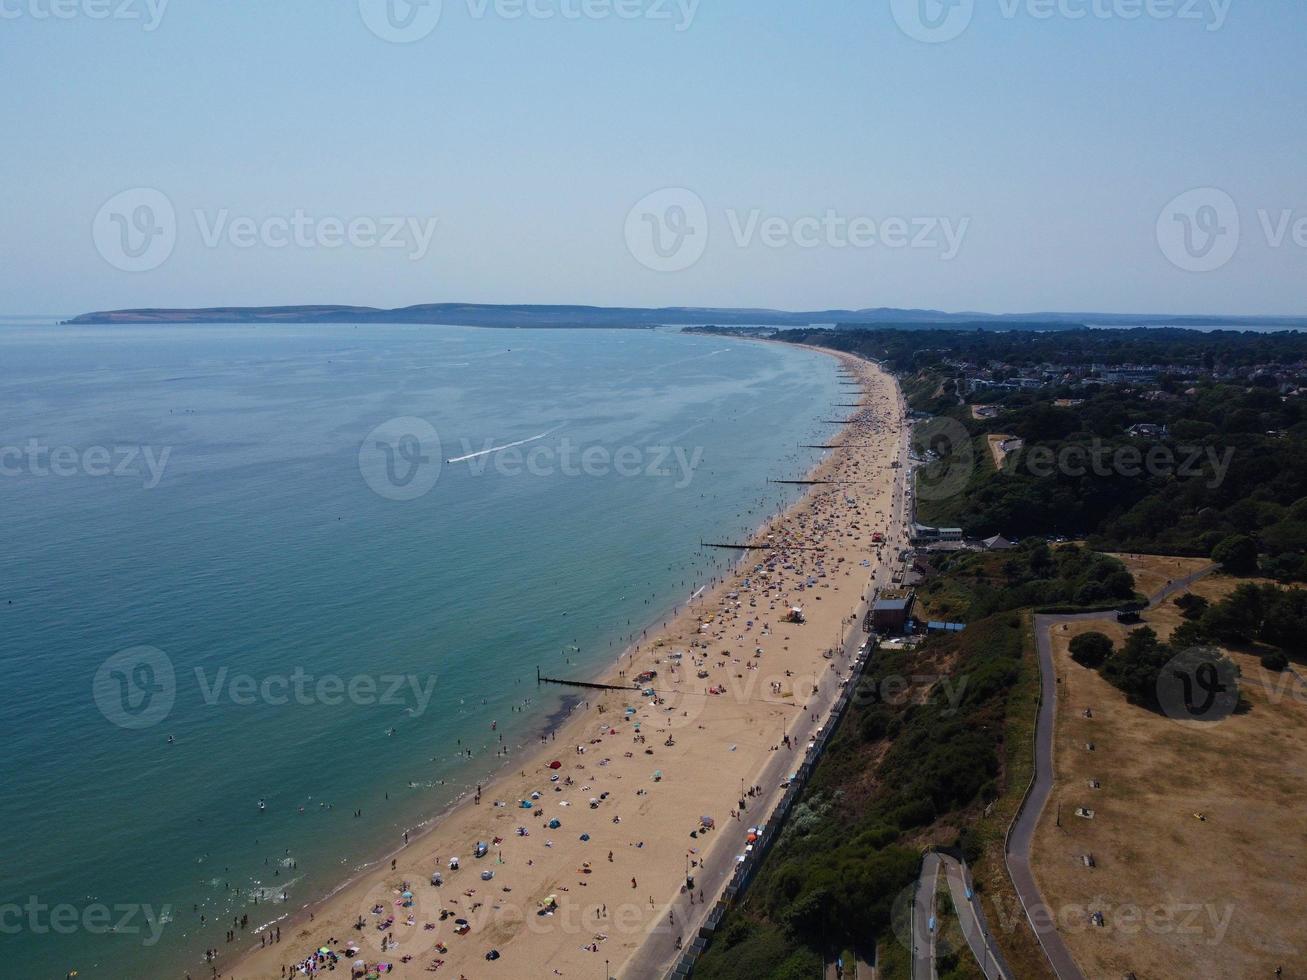 hög vinkel havsutsikt vid stranden med människor i Bournemouth, England, Storbritannien, flygbilder från det brittiska havet foto